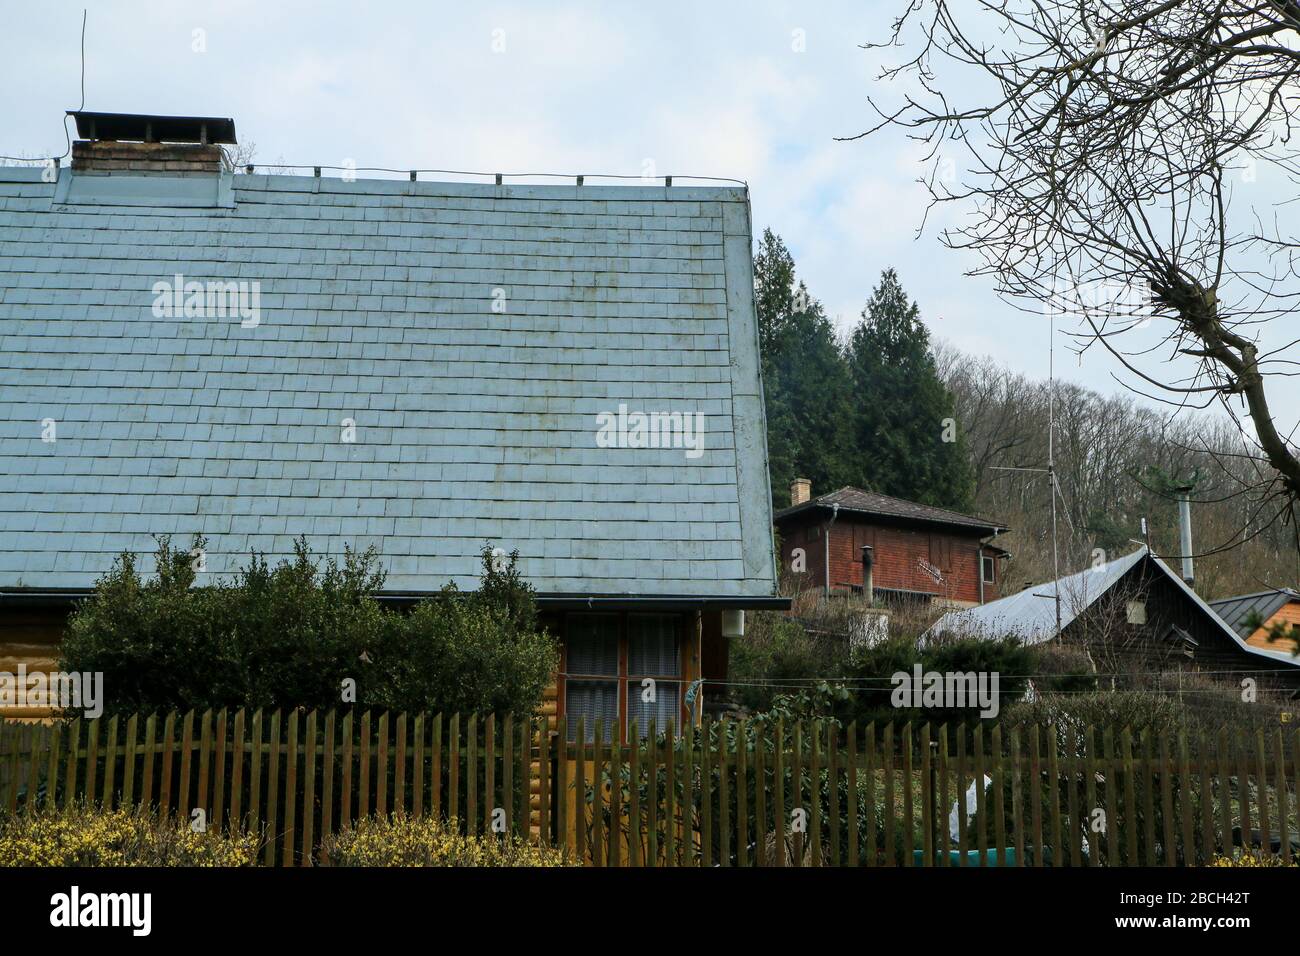 Les cottages traditionnels en bois tchèques pour passer le temps libre pendant les week-ends. Banque D'Images